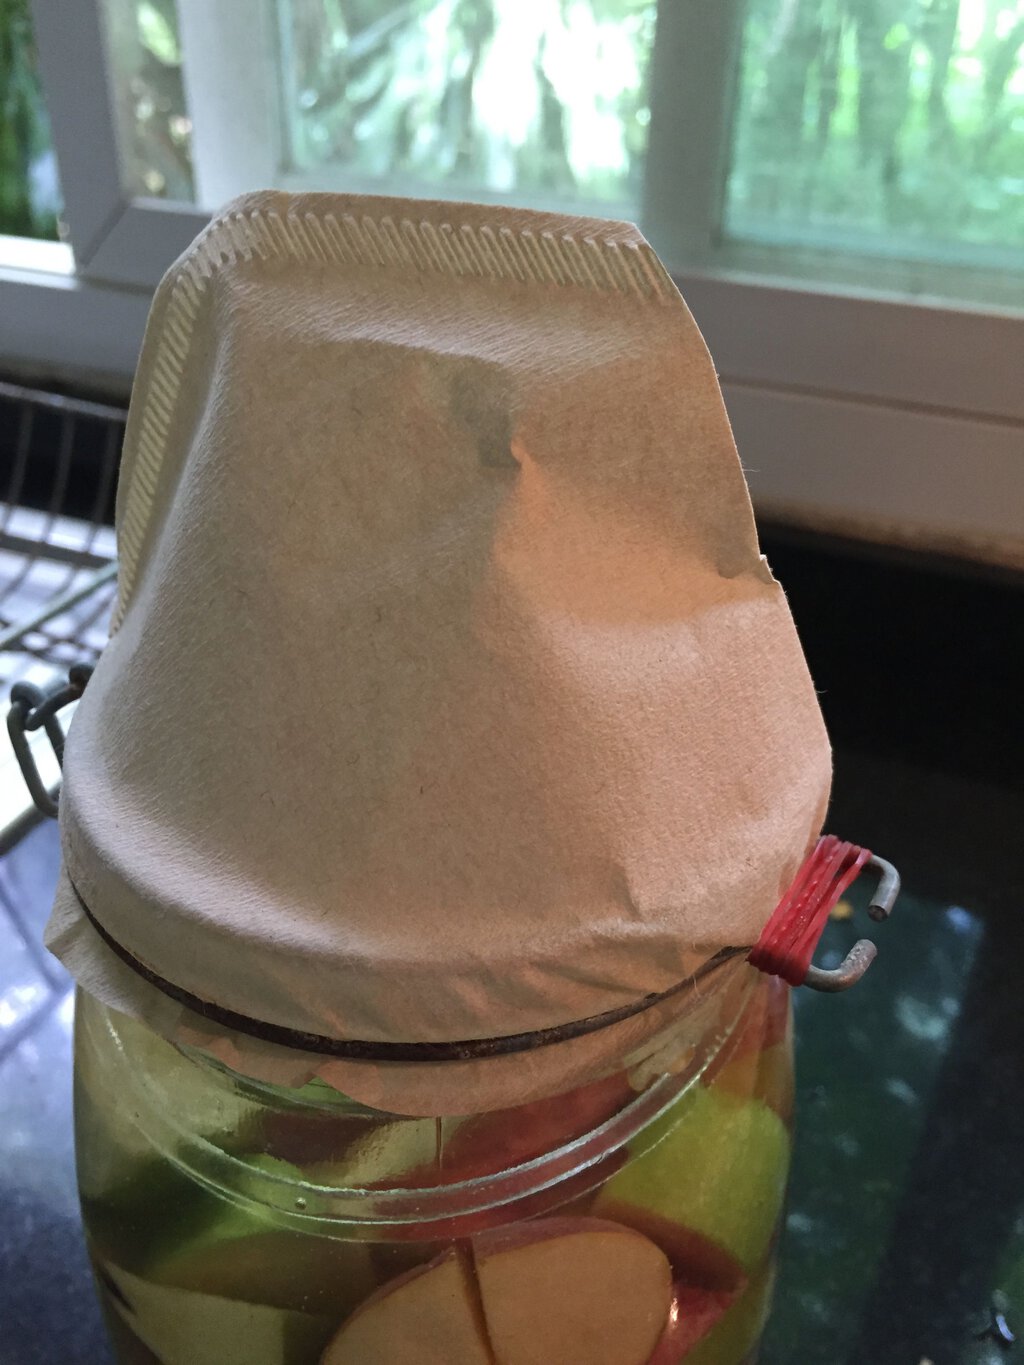 Apple cider vinegar fermentation jar, detail of coffee-filter hat